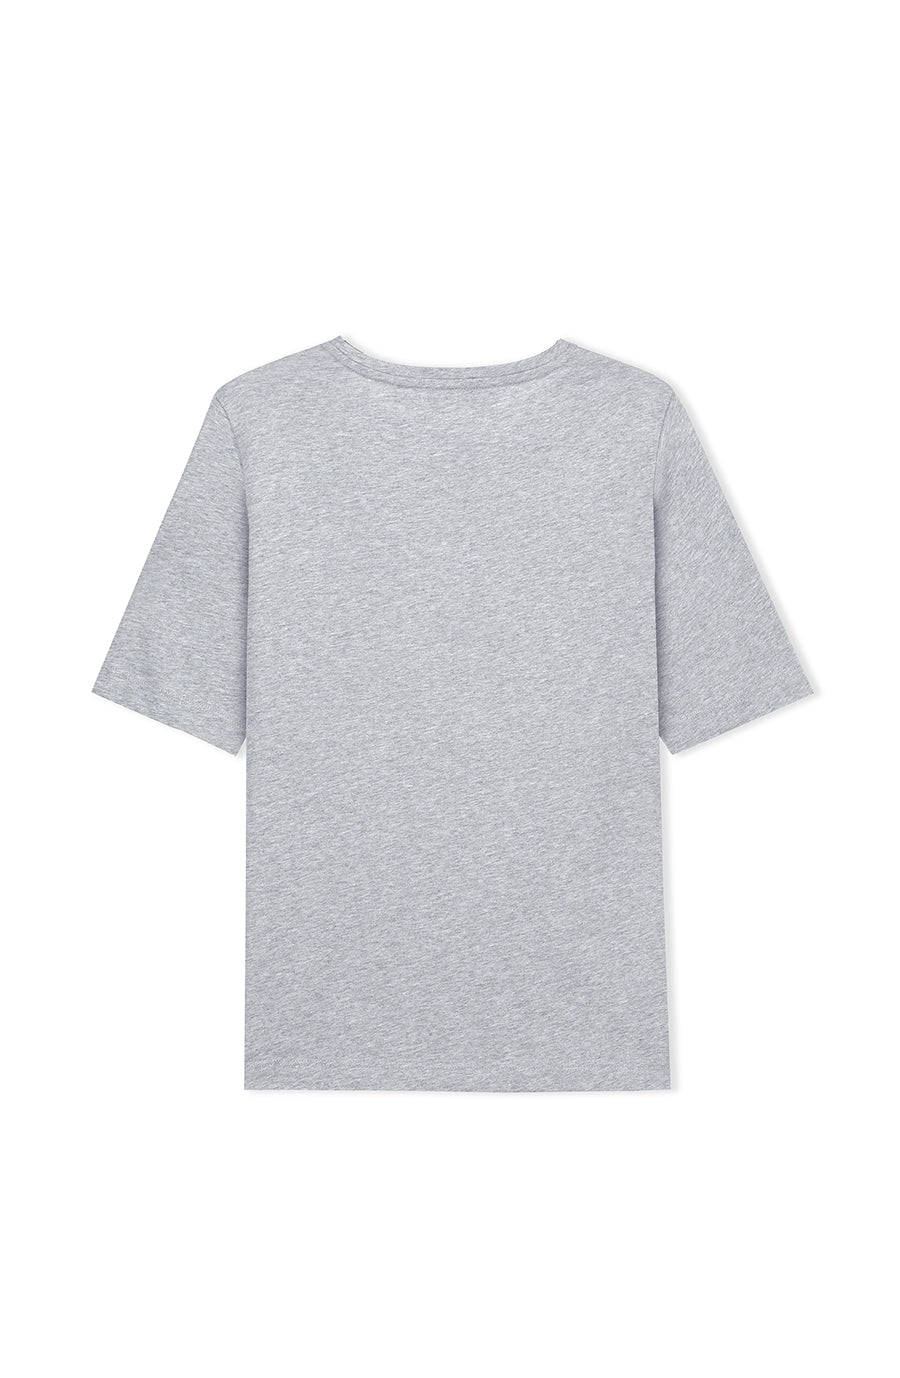 Sanna T-shirt Grey Melange